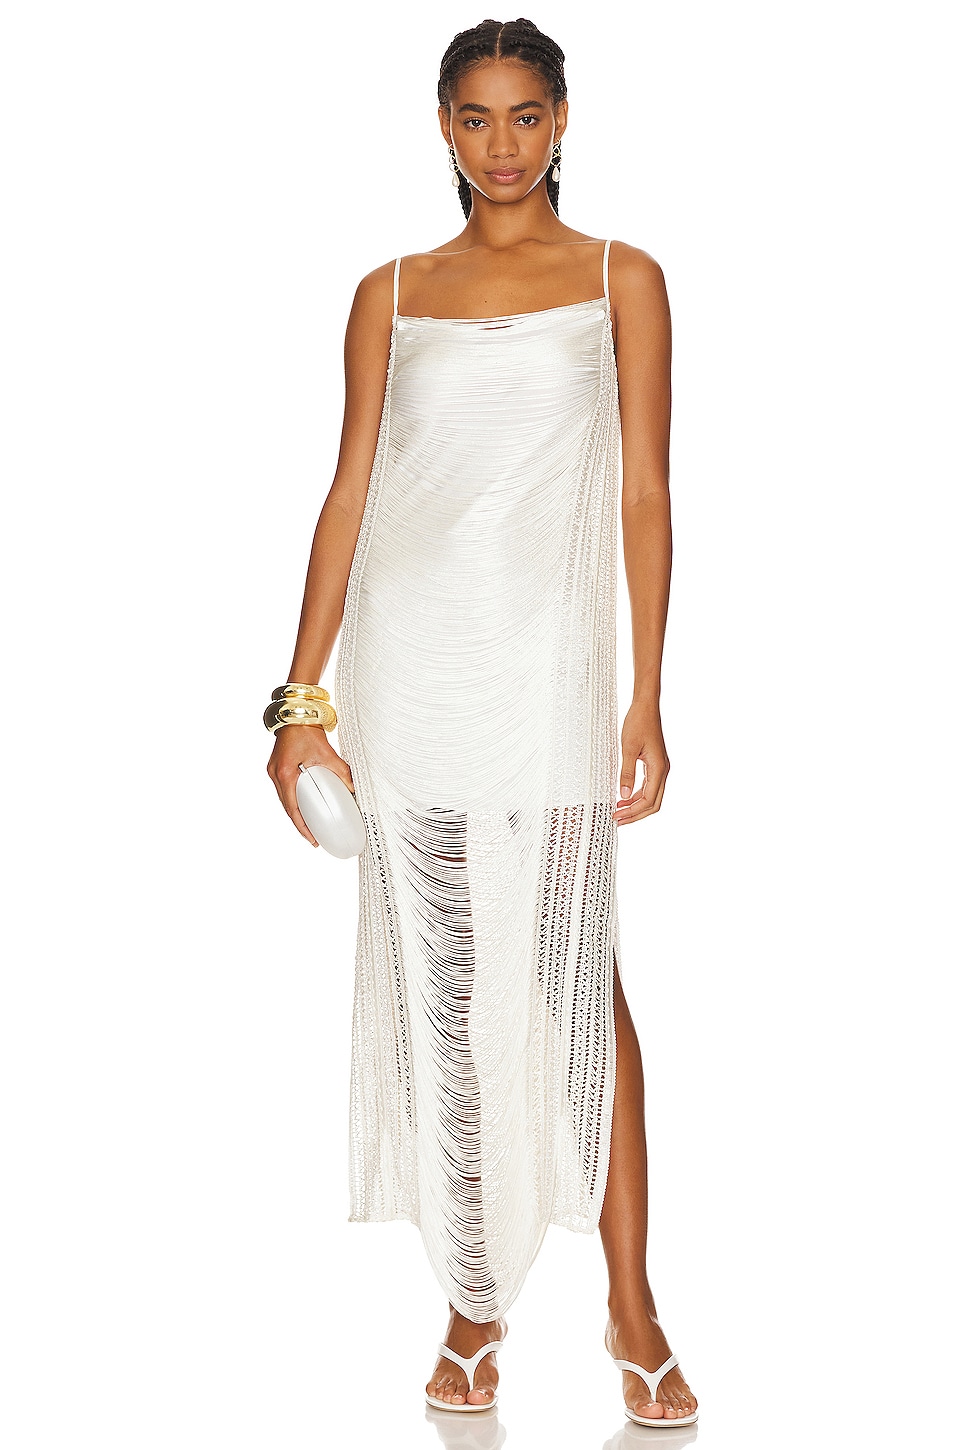 Patbo Draped Fringe Maxi Dress in White - Size L